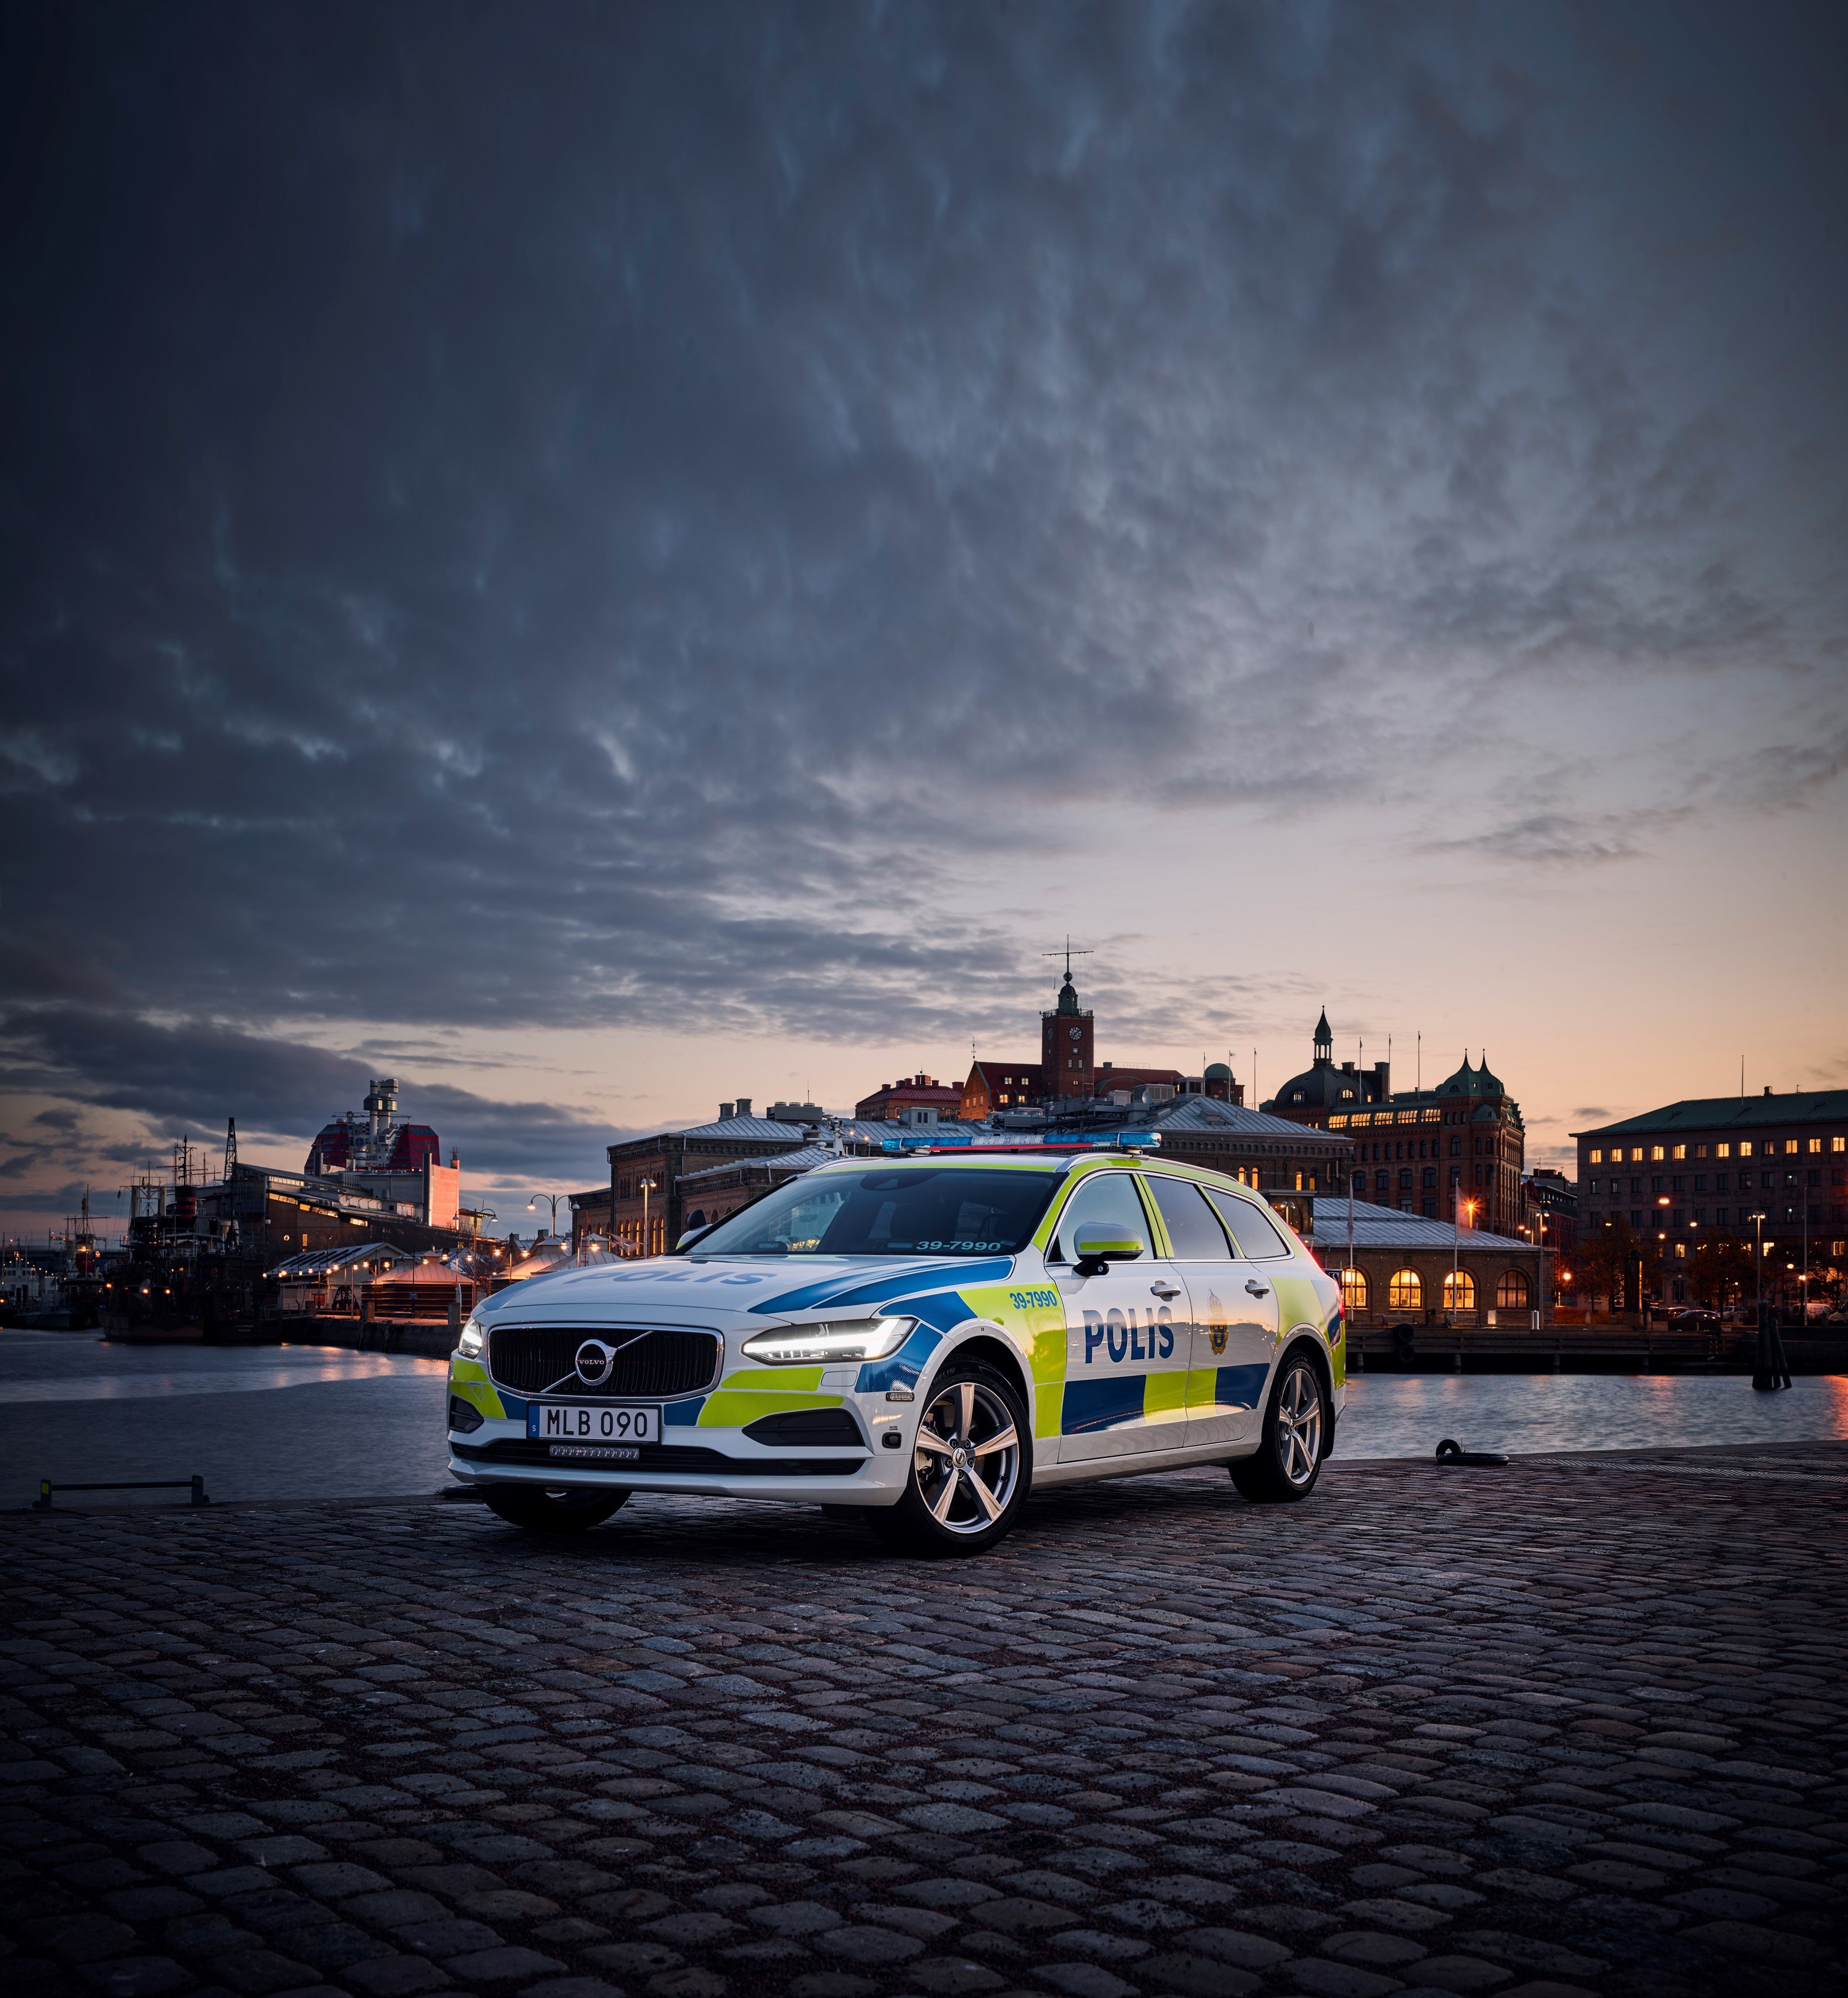 Policía sueca estrenará Volvo V90 - El Universal